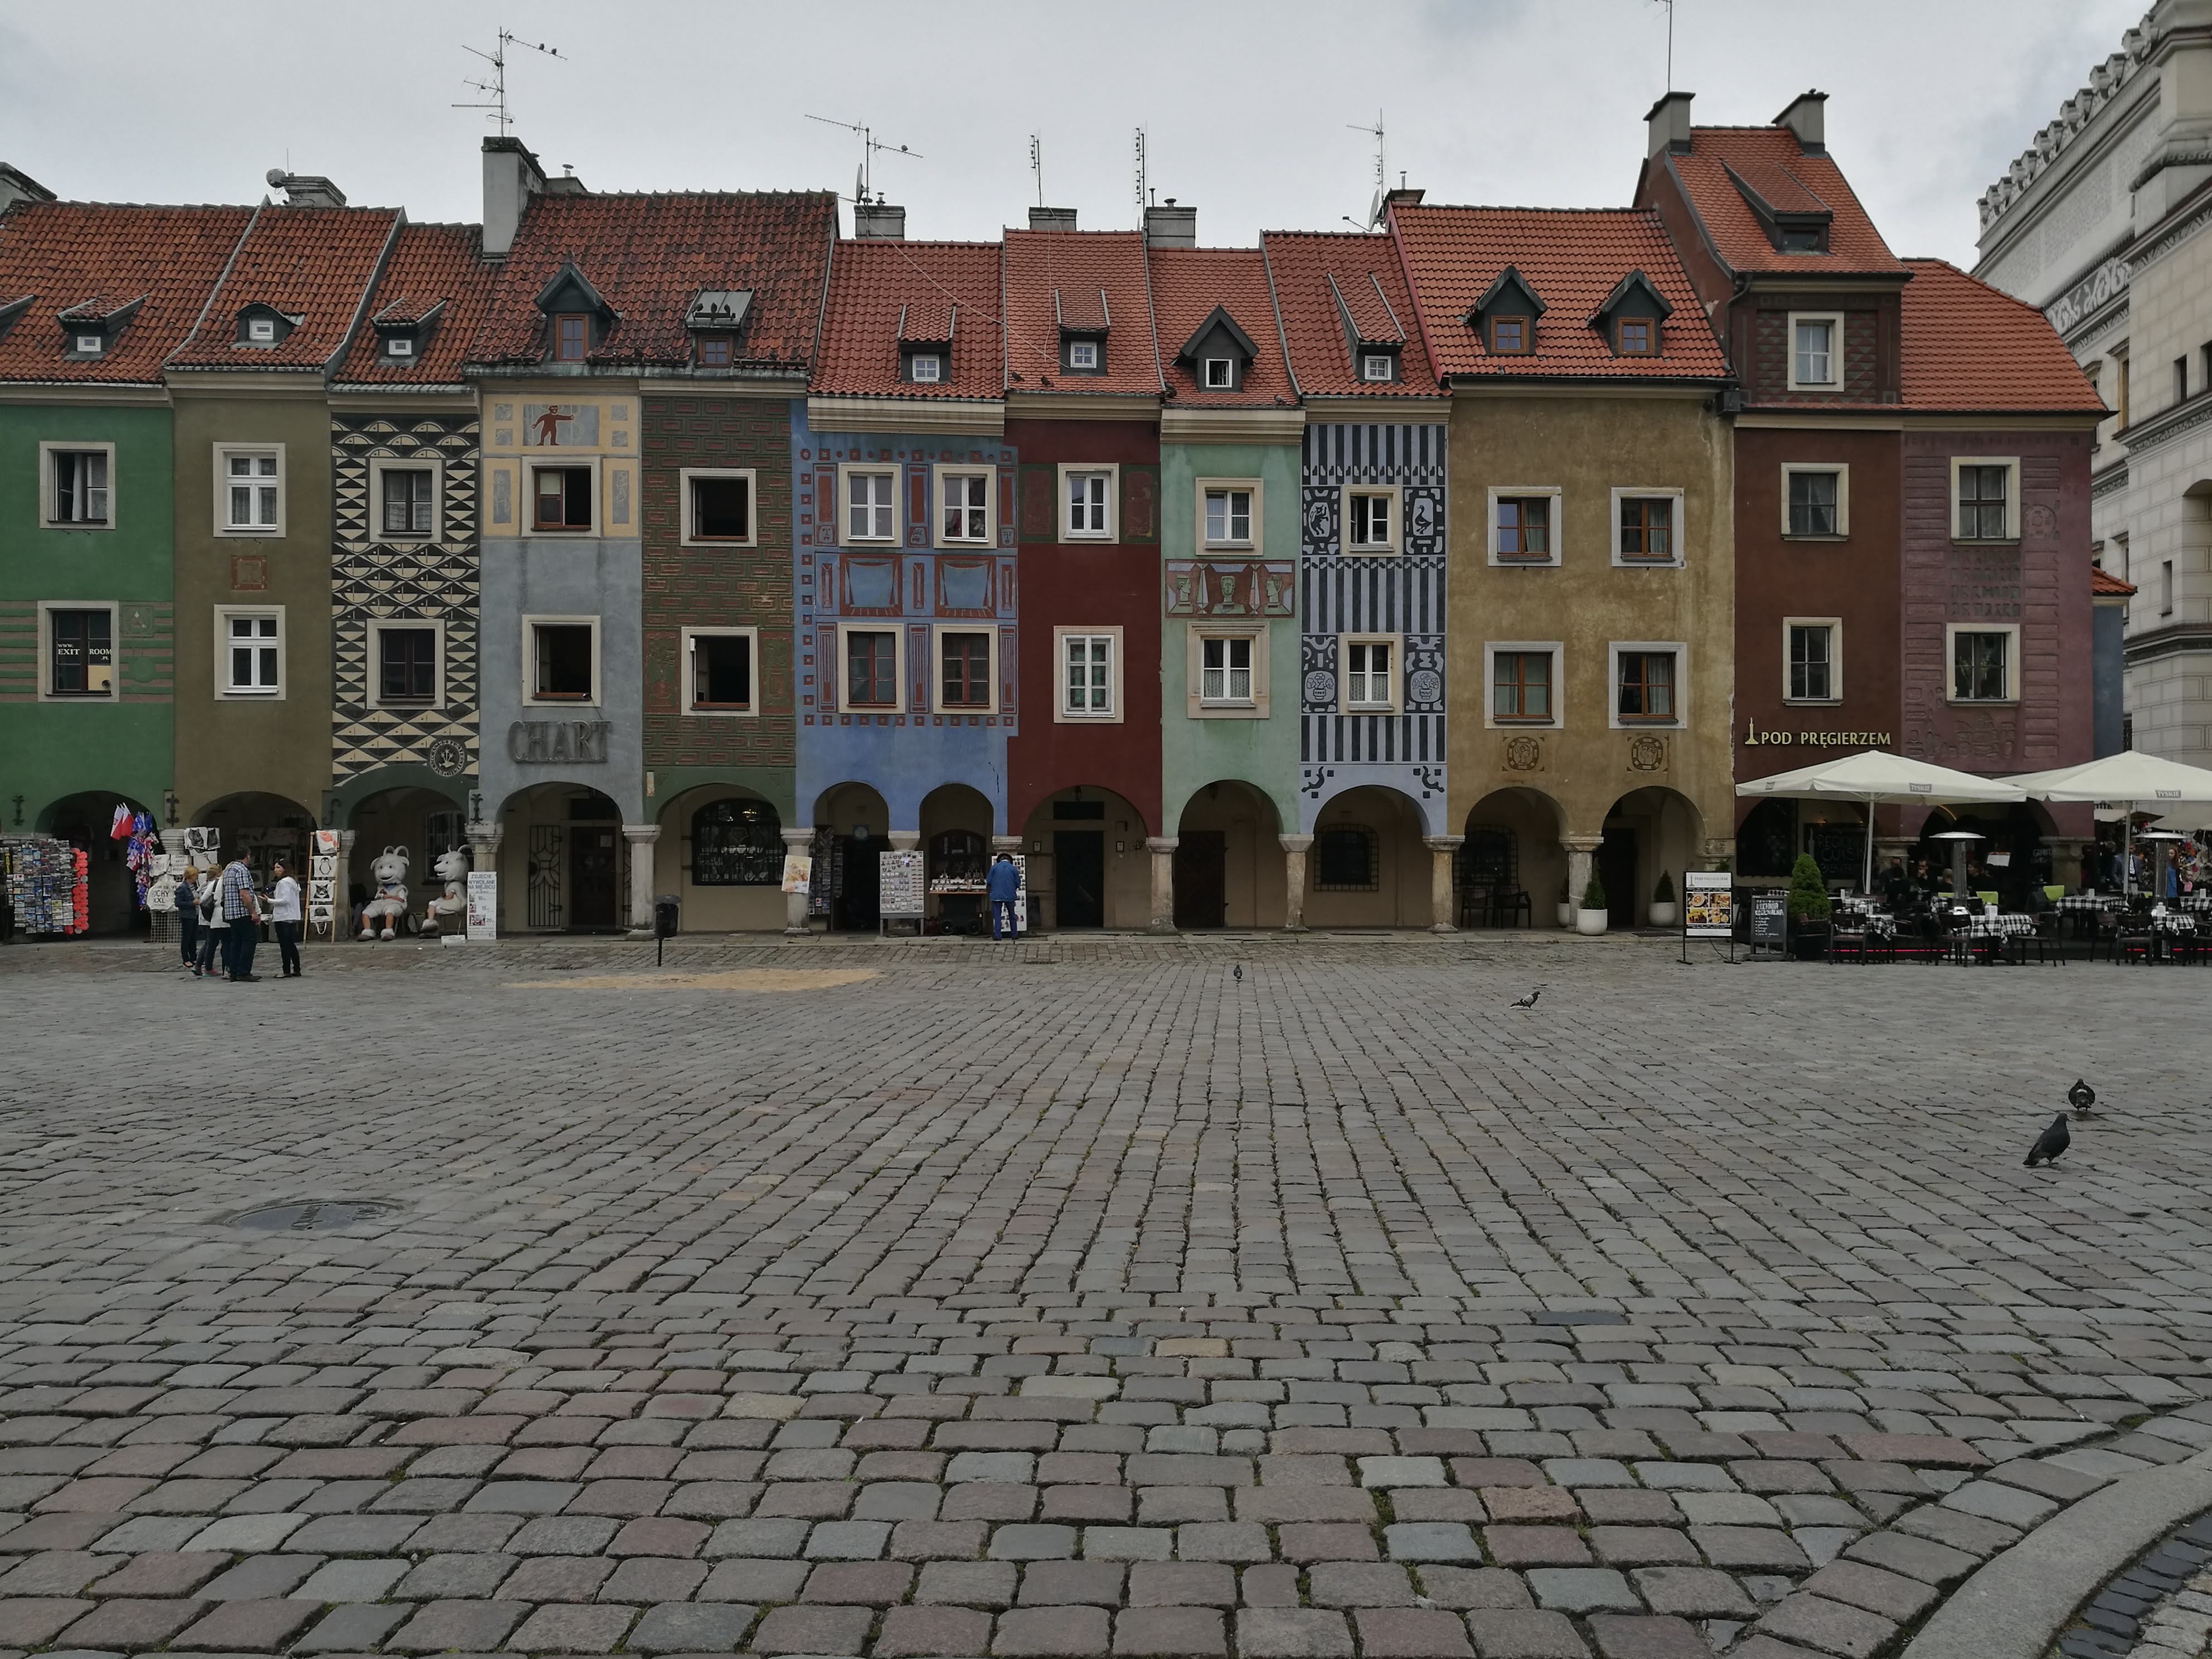 Poznan town square